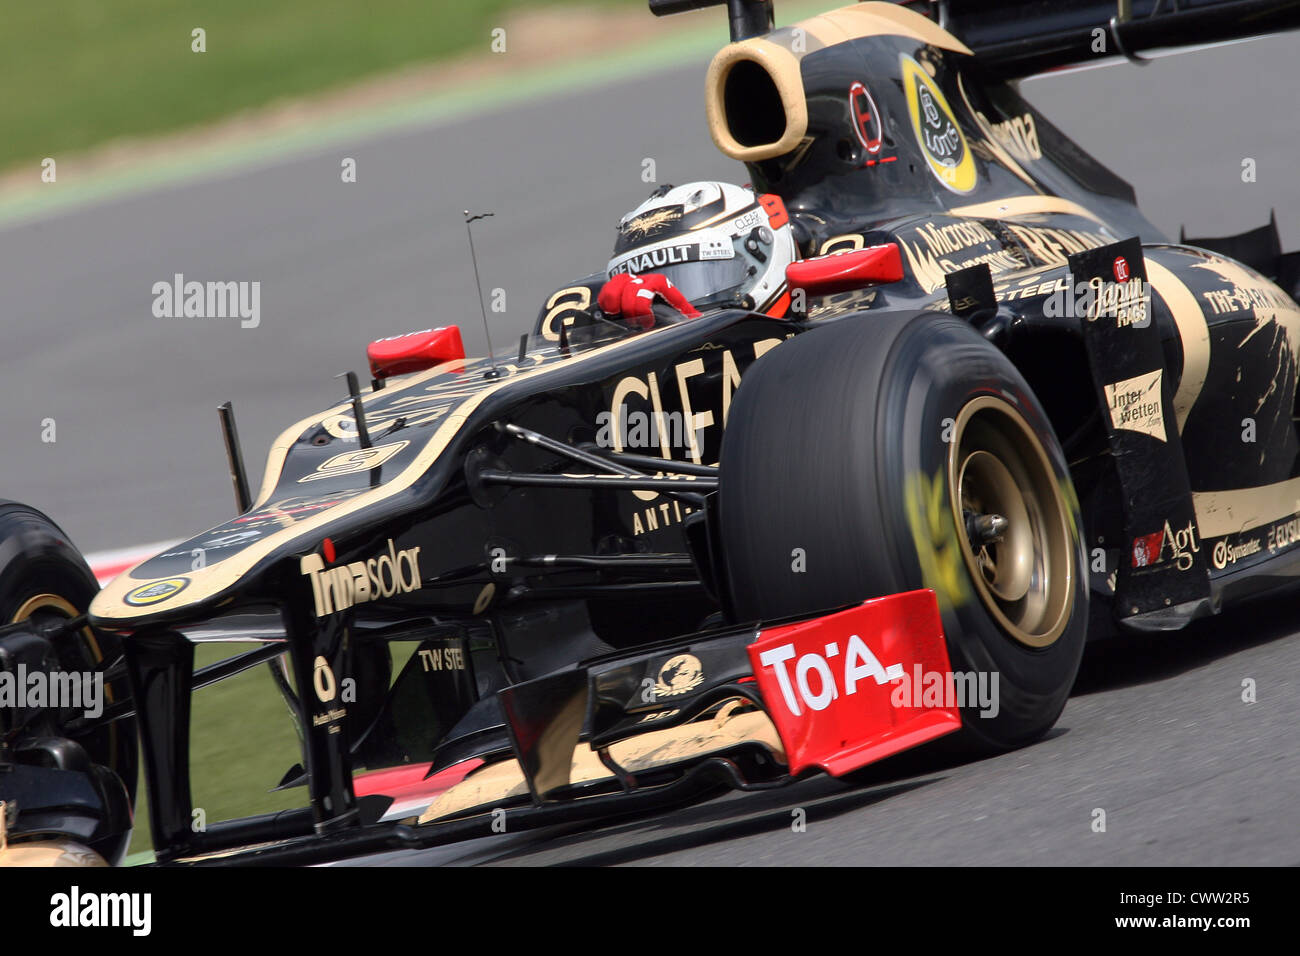 Kimi Räikkönen (Lotus F1) britischen Grand Prix von Silverstone UK. Formel 1, Formel 1 Stockfoto